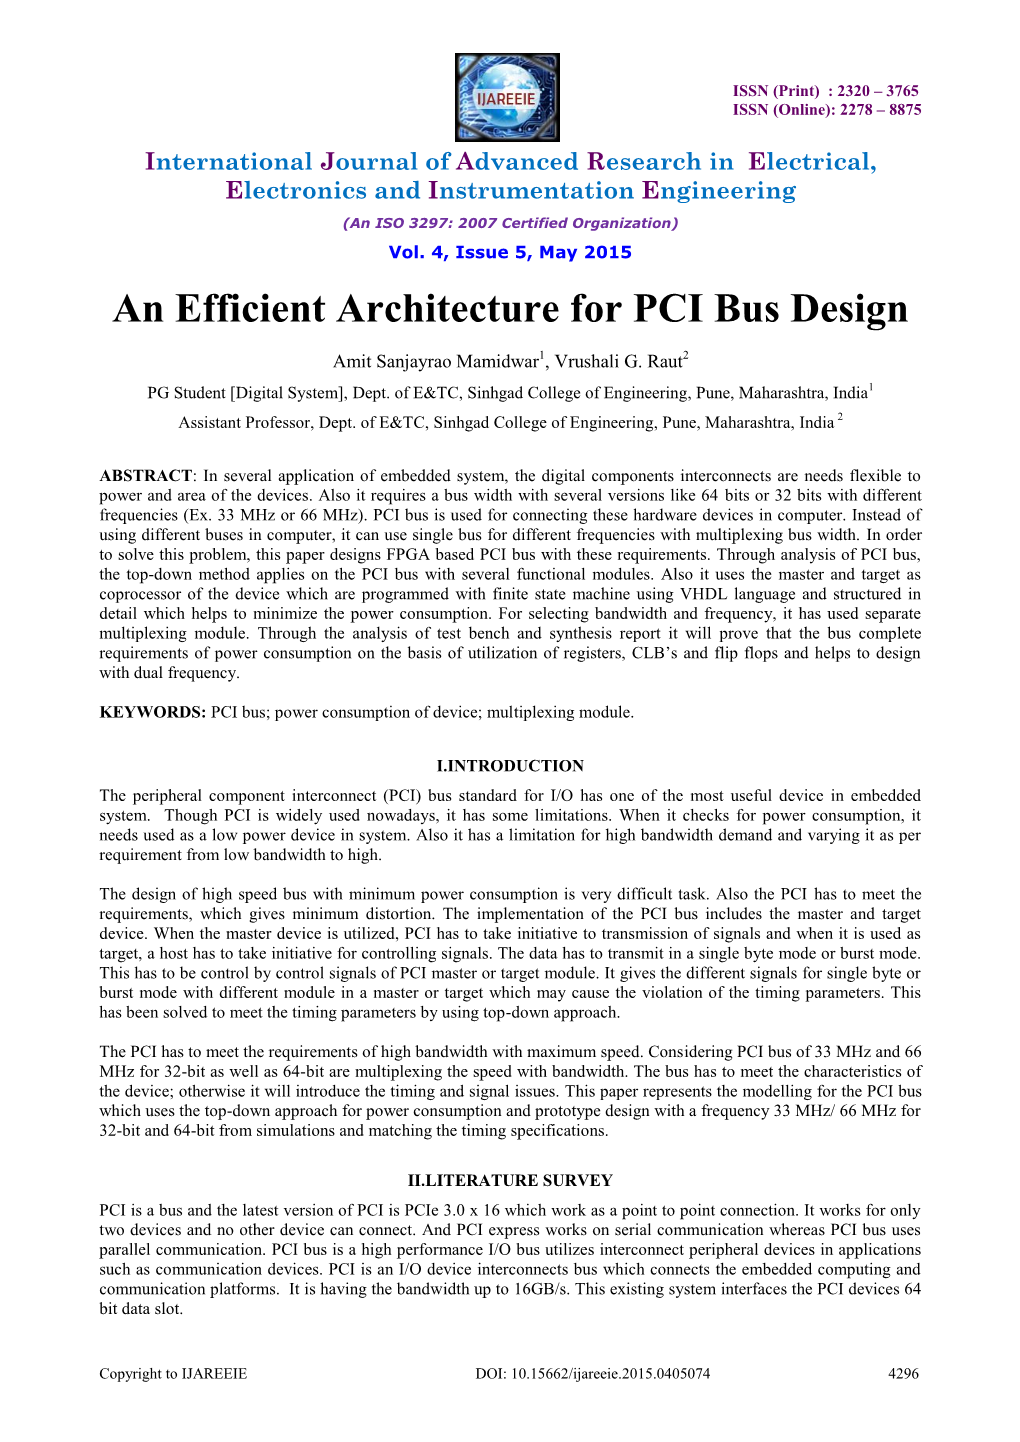 An Efficient Architecture for PCI Bus Design